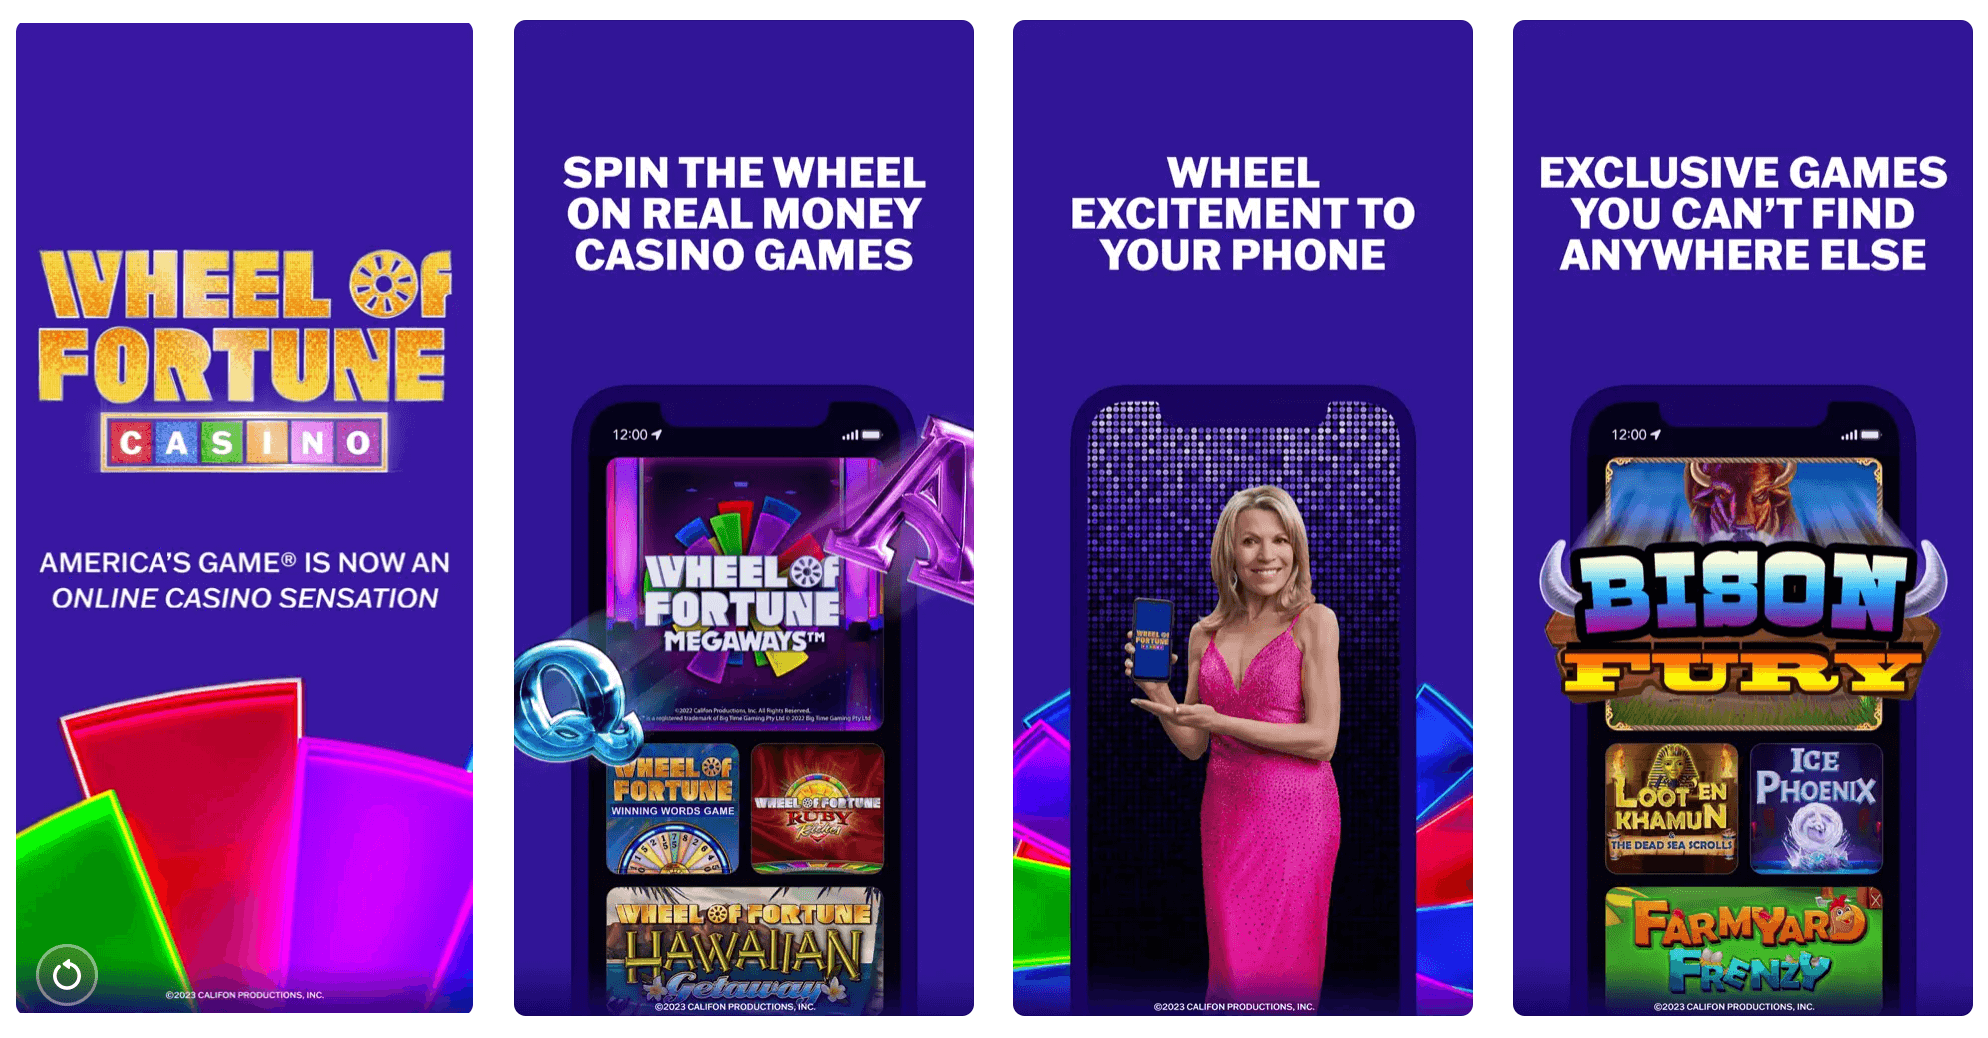 Wheel of Fortune Casino NJ App